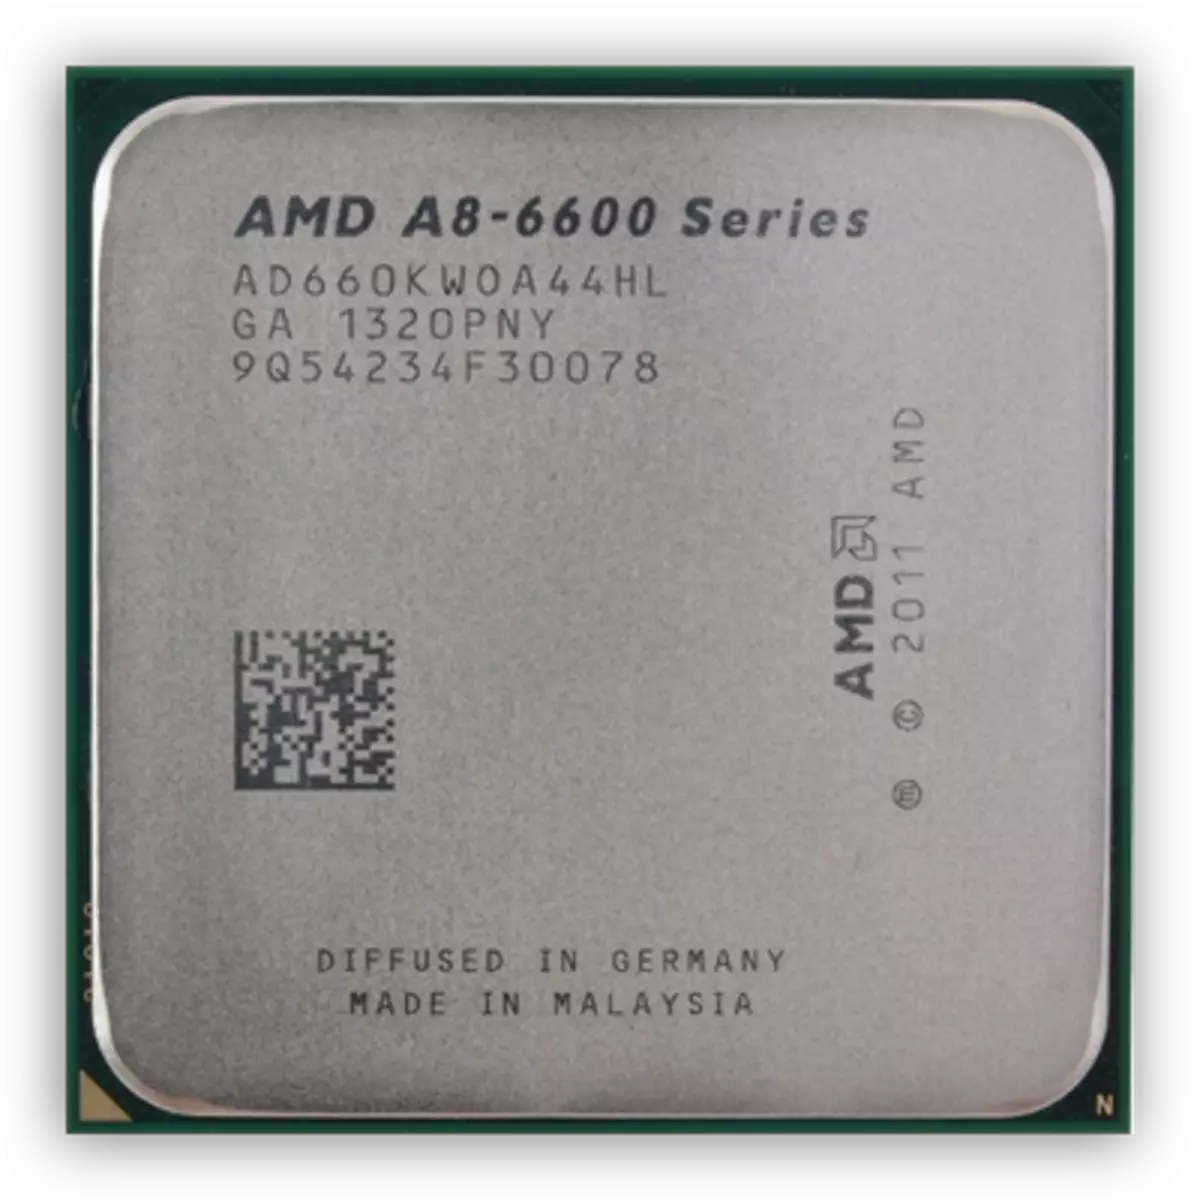 Працэсар AMD A8 6600K на архітэктуры Richland